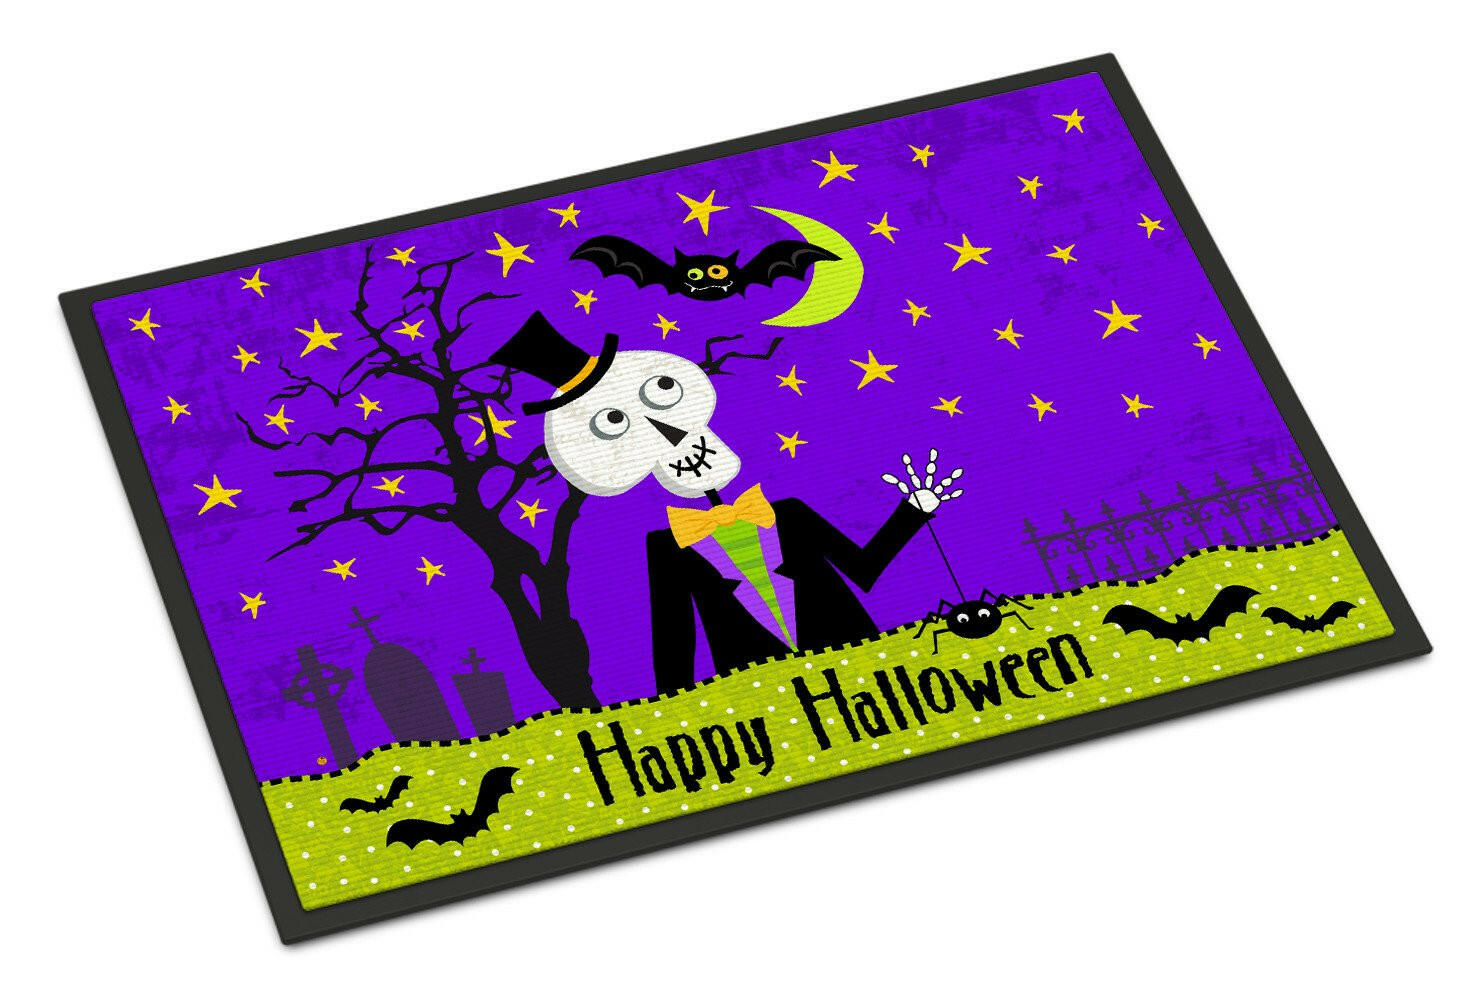 Happy Halloween Skeleton Indoor or Outdoor Mat 18x27 VHA3014MAT - the-store.com